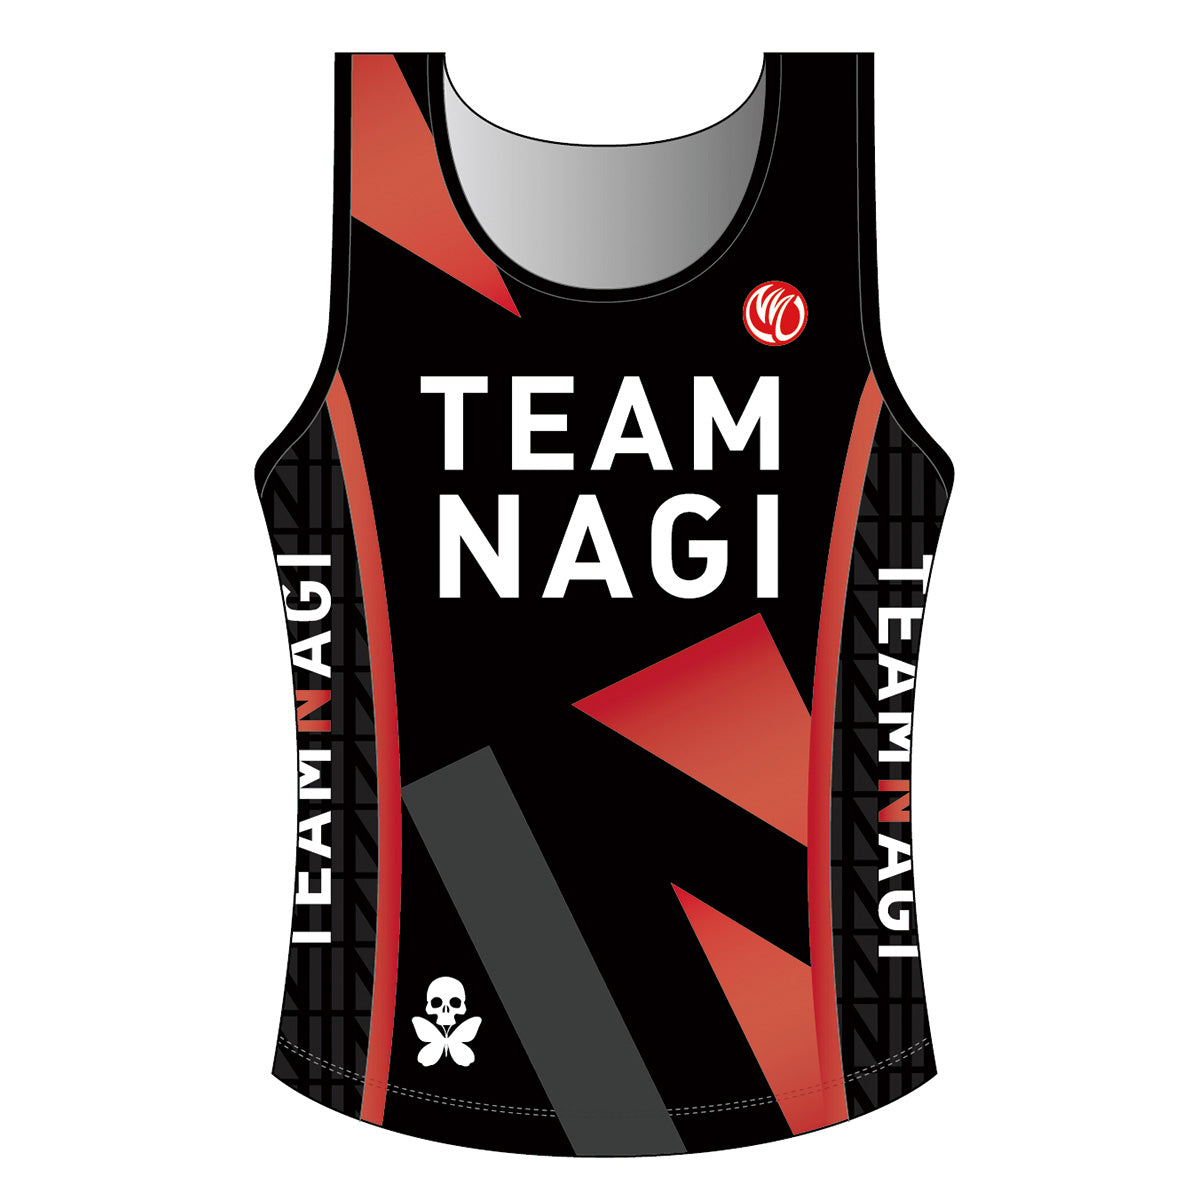 Team Nagi BLACK DIAMOND Men’s Tri Singlet